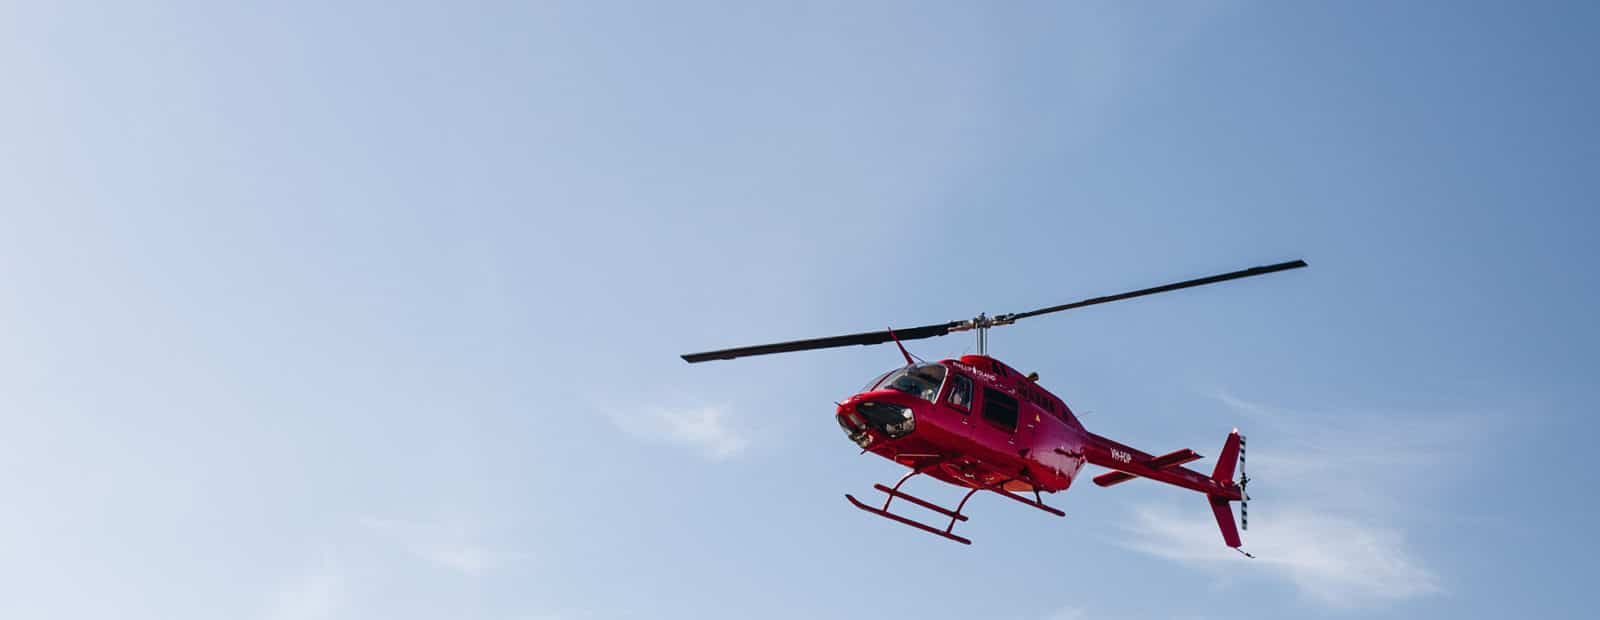 Punainen helikopteri taivaalla